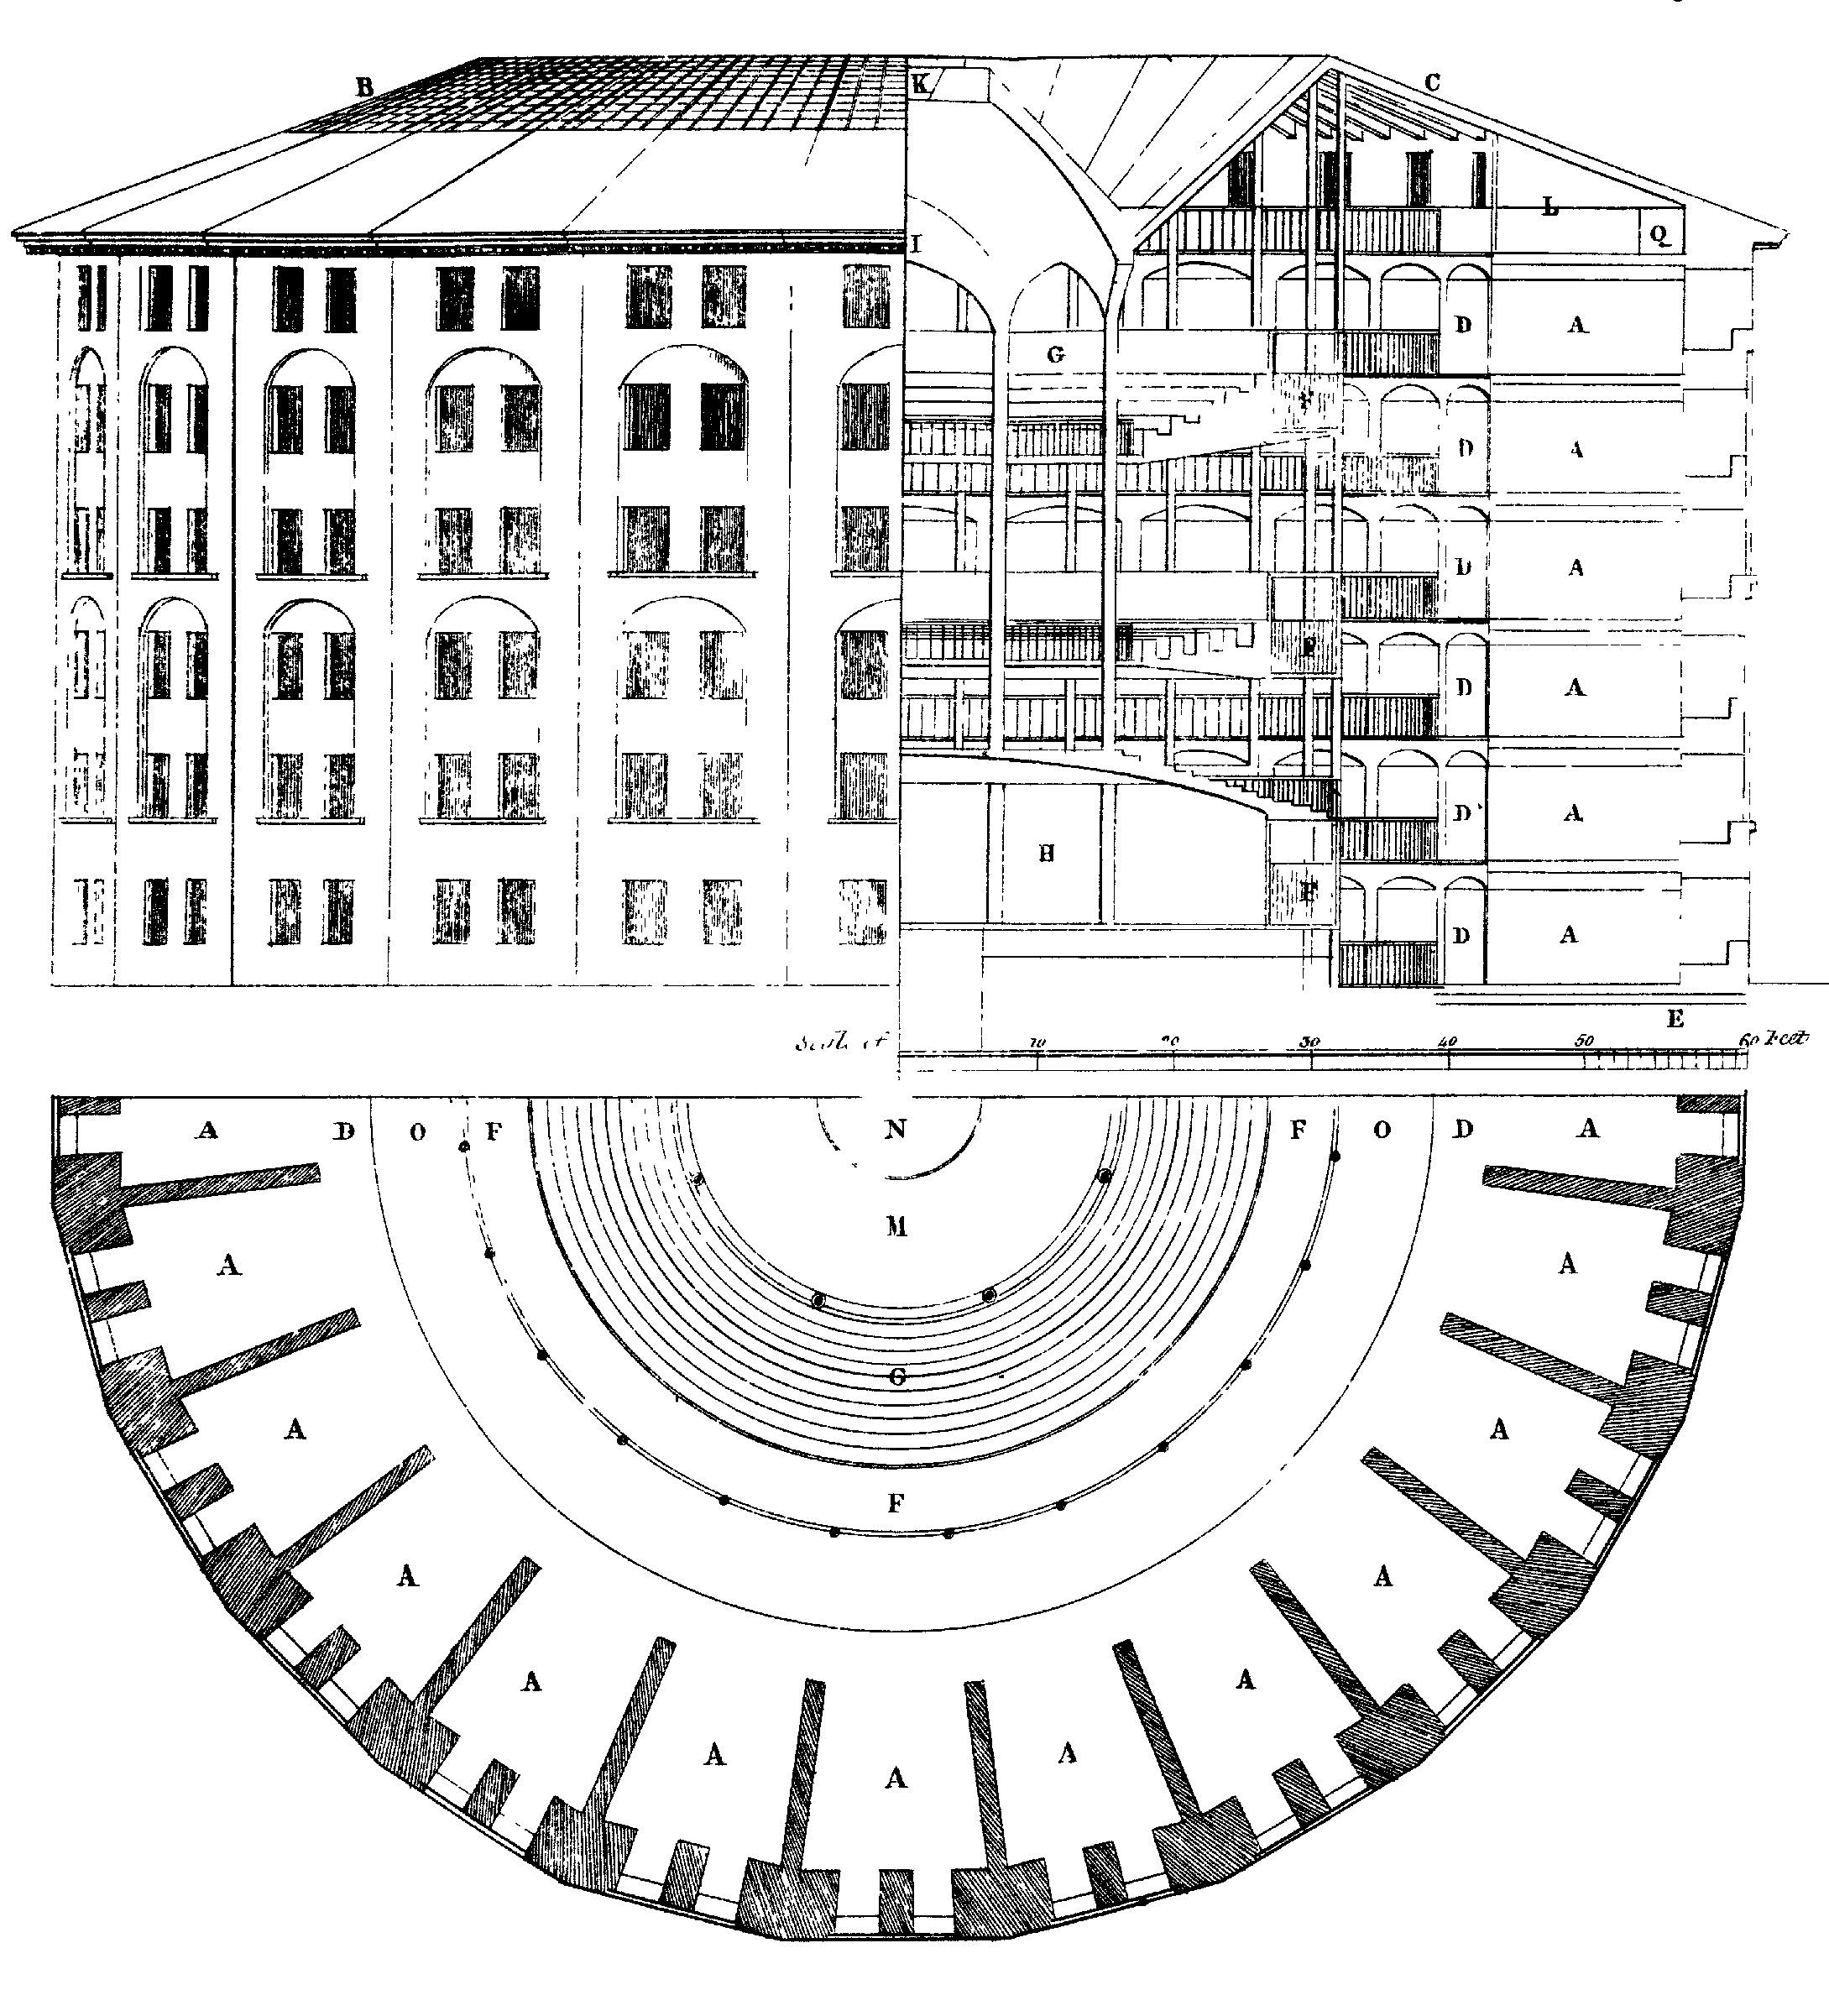 Figura 6.3: Disseny de la presó panòptic, proposada per primera vegada per Jeremy Bentham. Al centre, hi ha un vident invisible que es pot observar el comportament de tots i no es pot observar. Dibuix de Willey Reveley, 1791. Font: Wikimedia Commons.